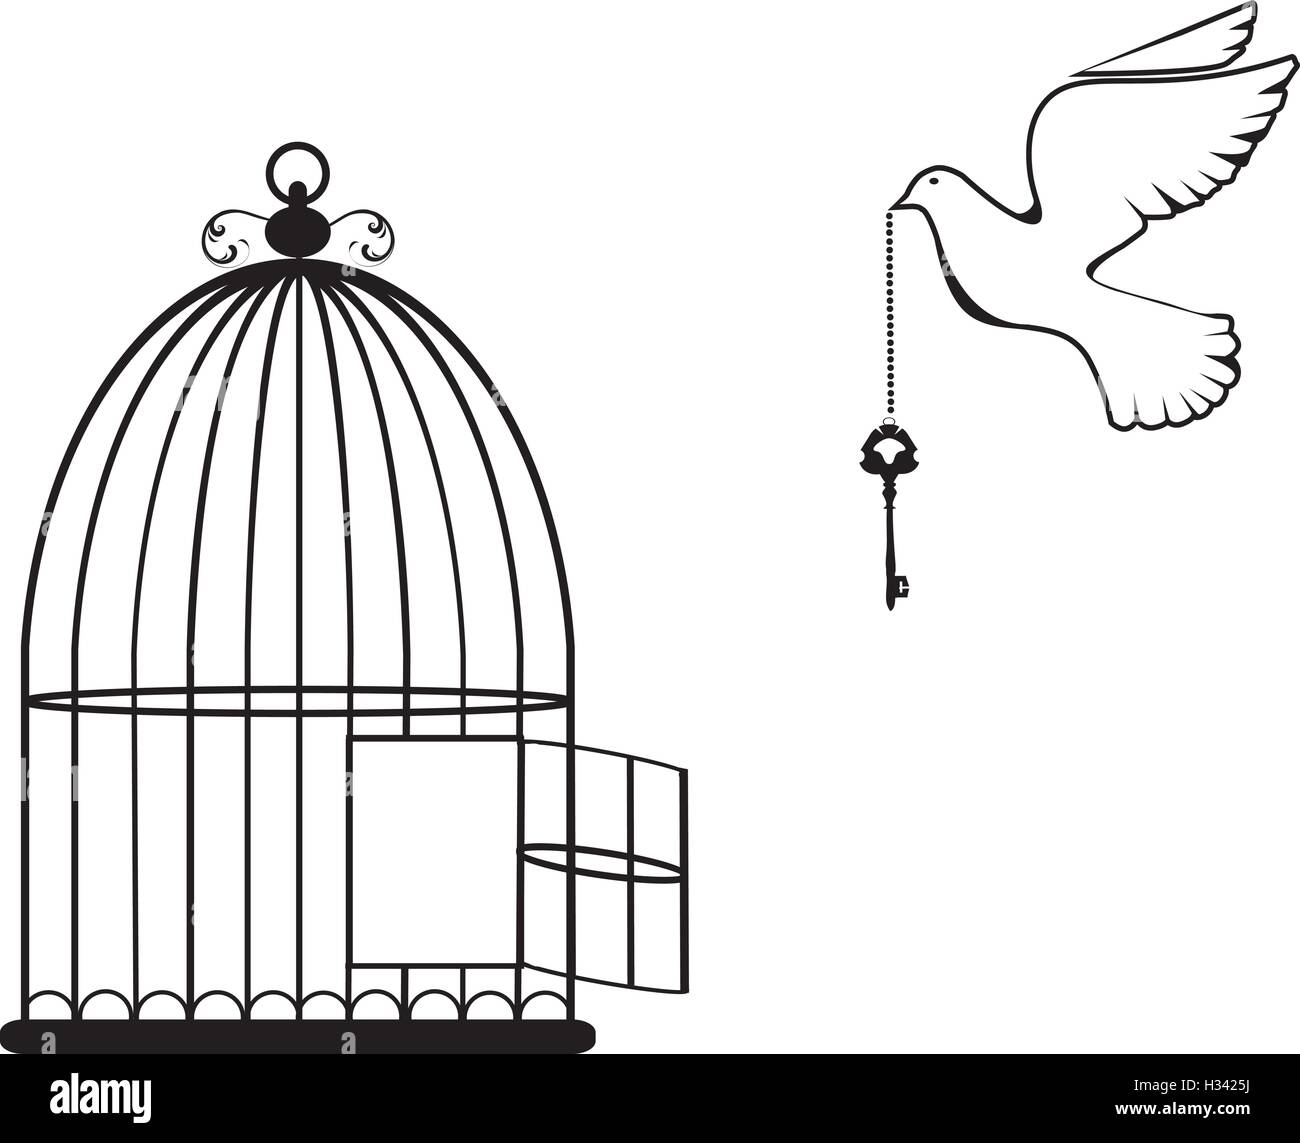 Vektor-Illustration von einem Vogelkäfig mit Taube und Schlüssel öffnen Stock Vektor